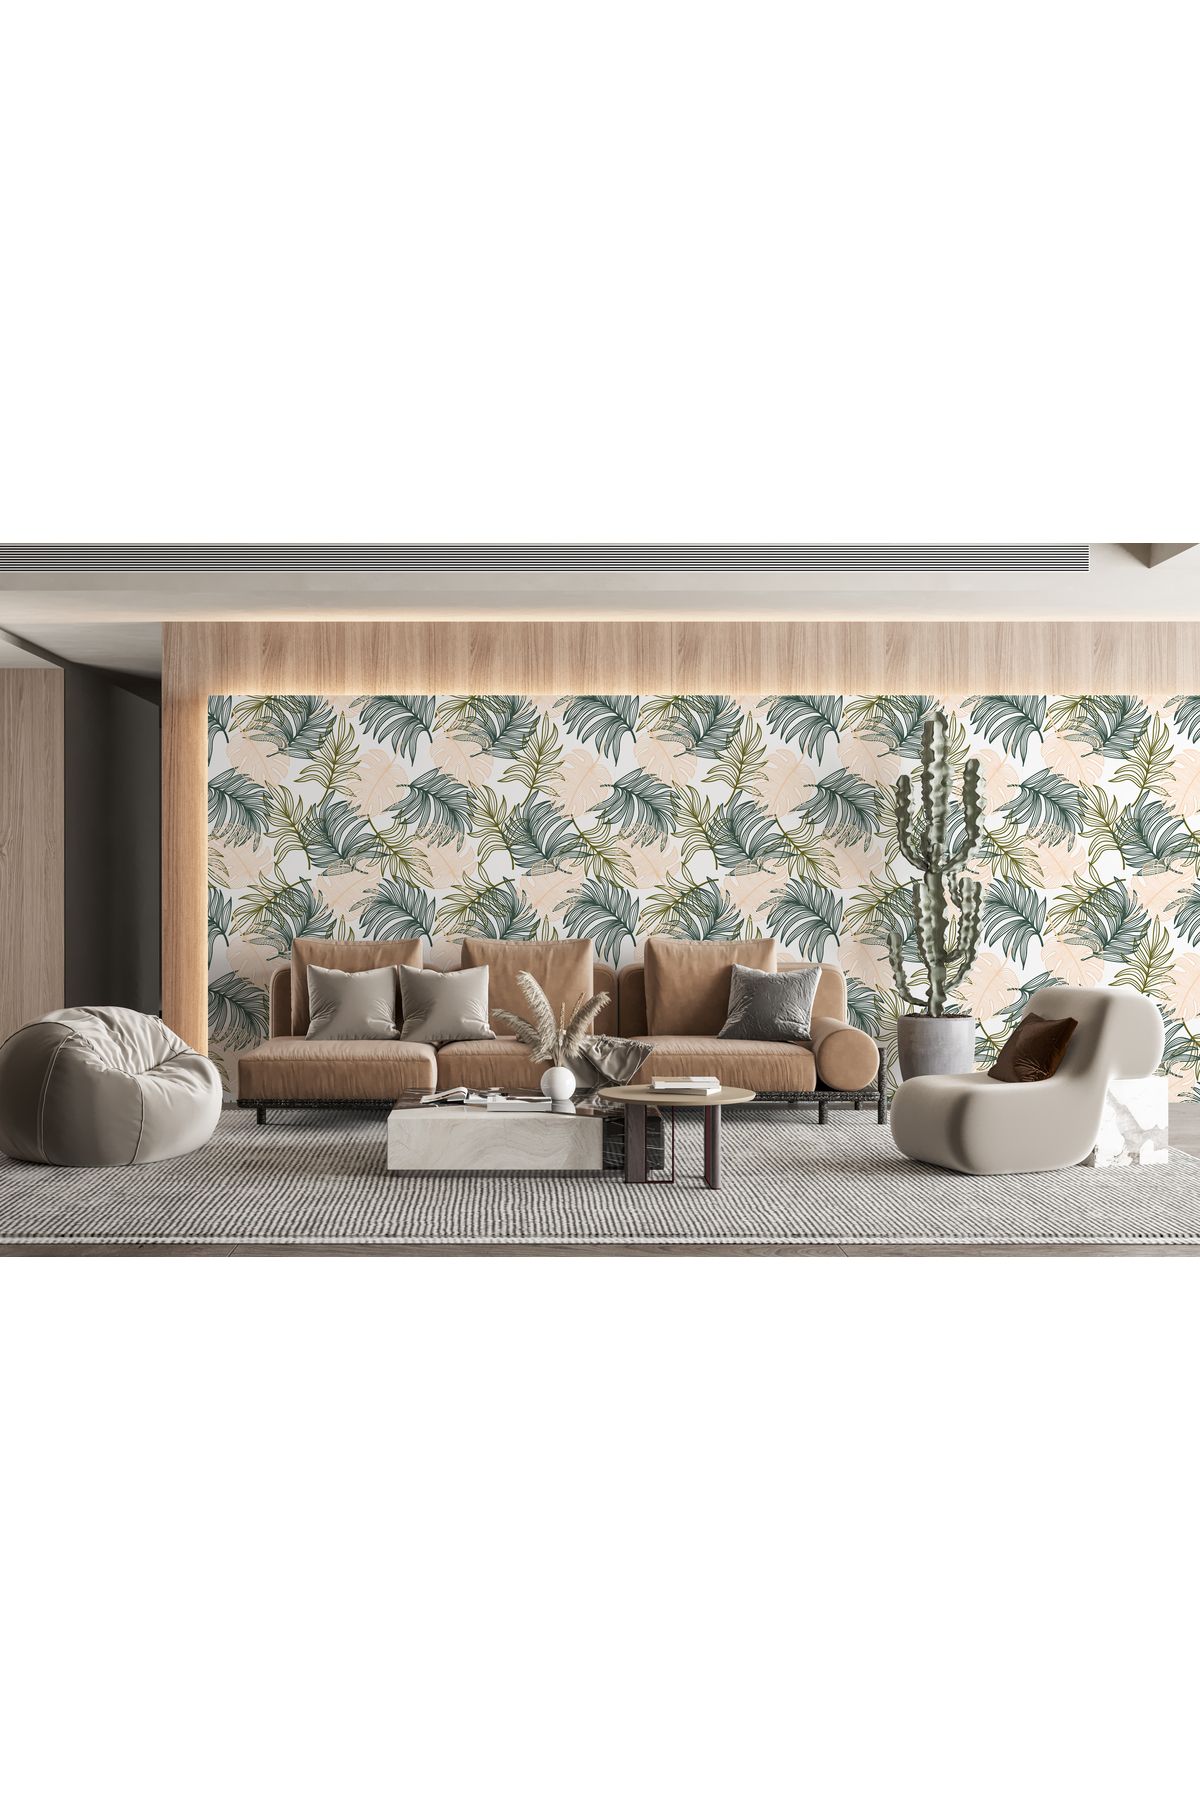 StuArt Design Parlak Renkli Bitkilerle Tropikal Desen Oturma Odası Duvar Kağıdı